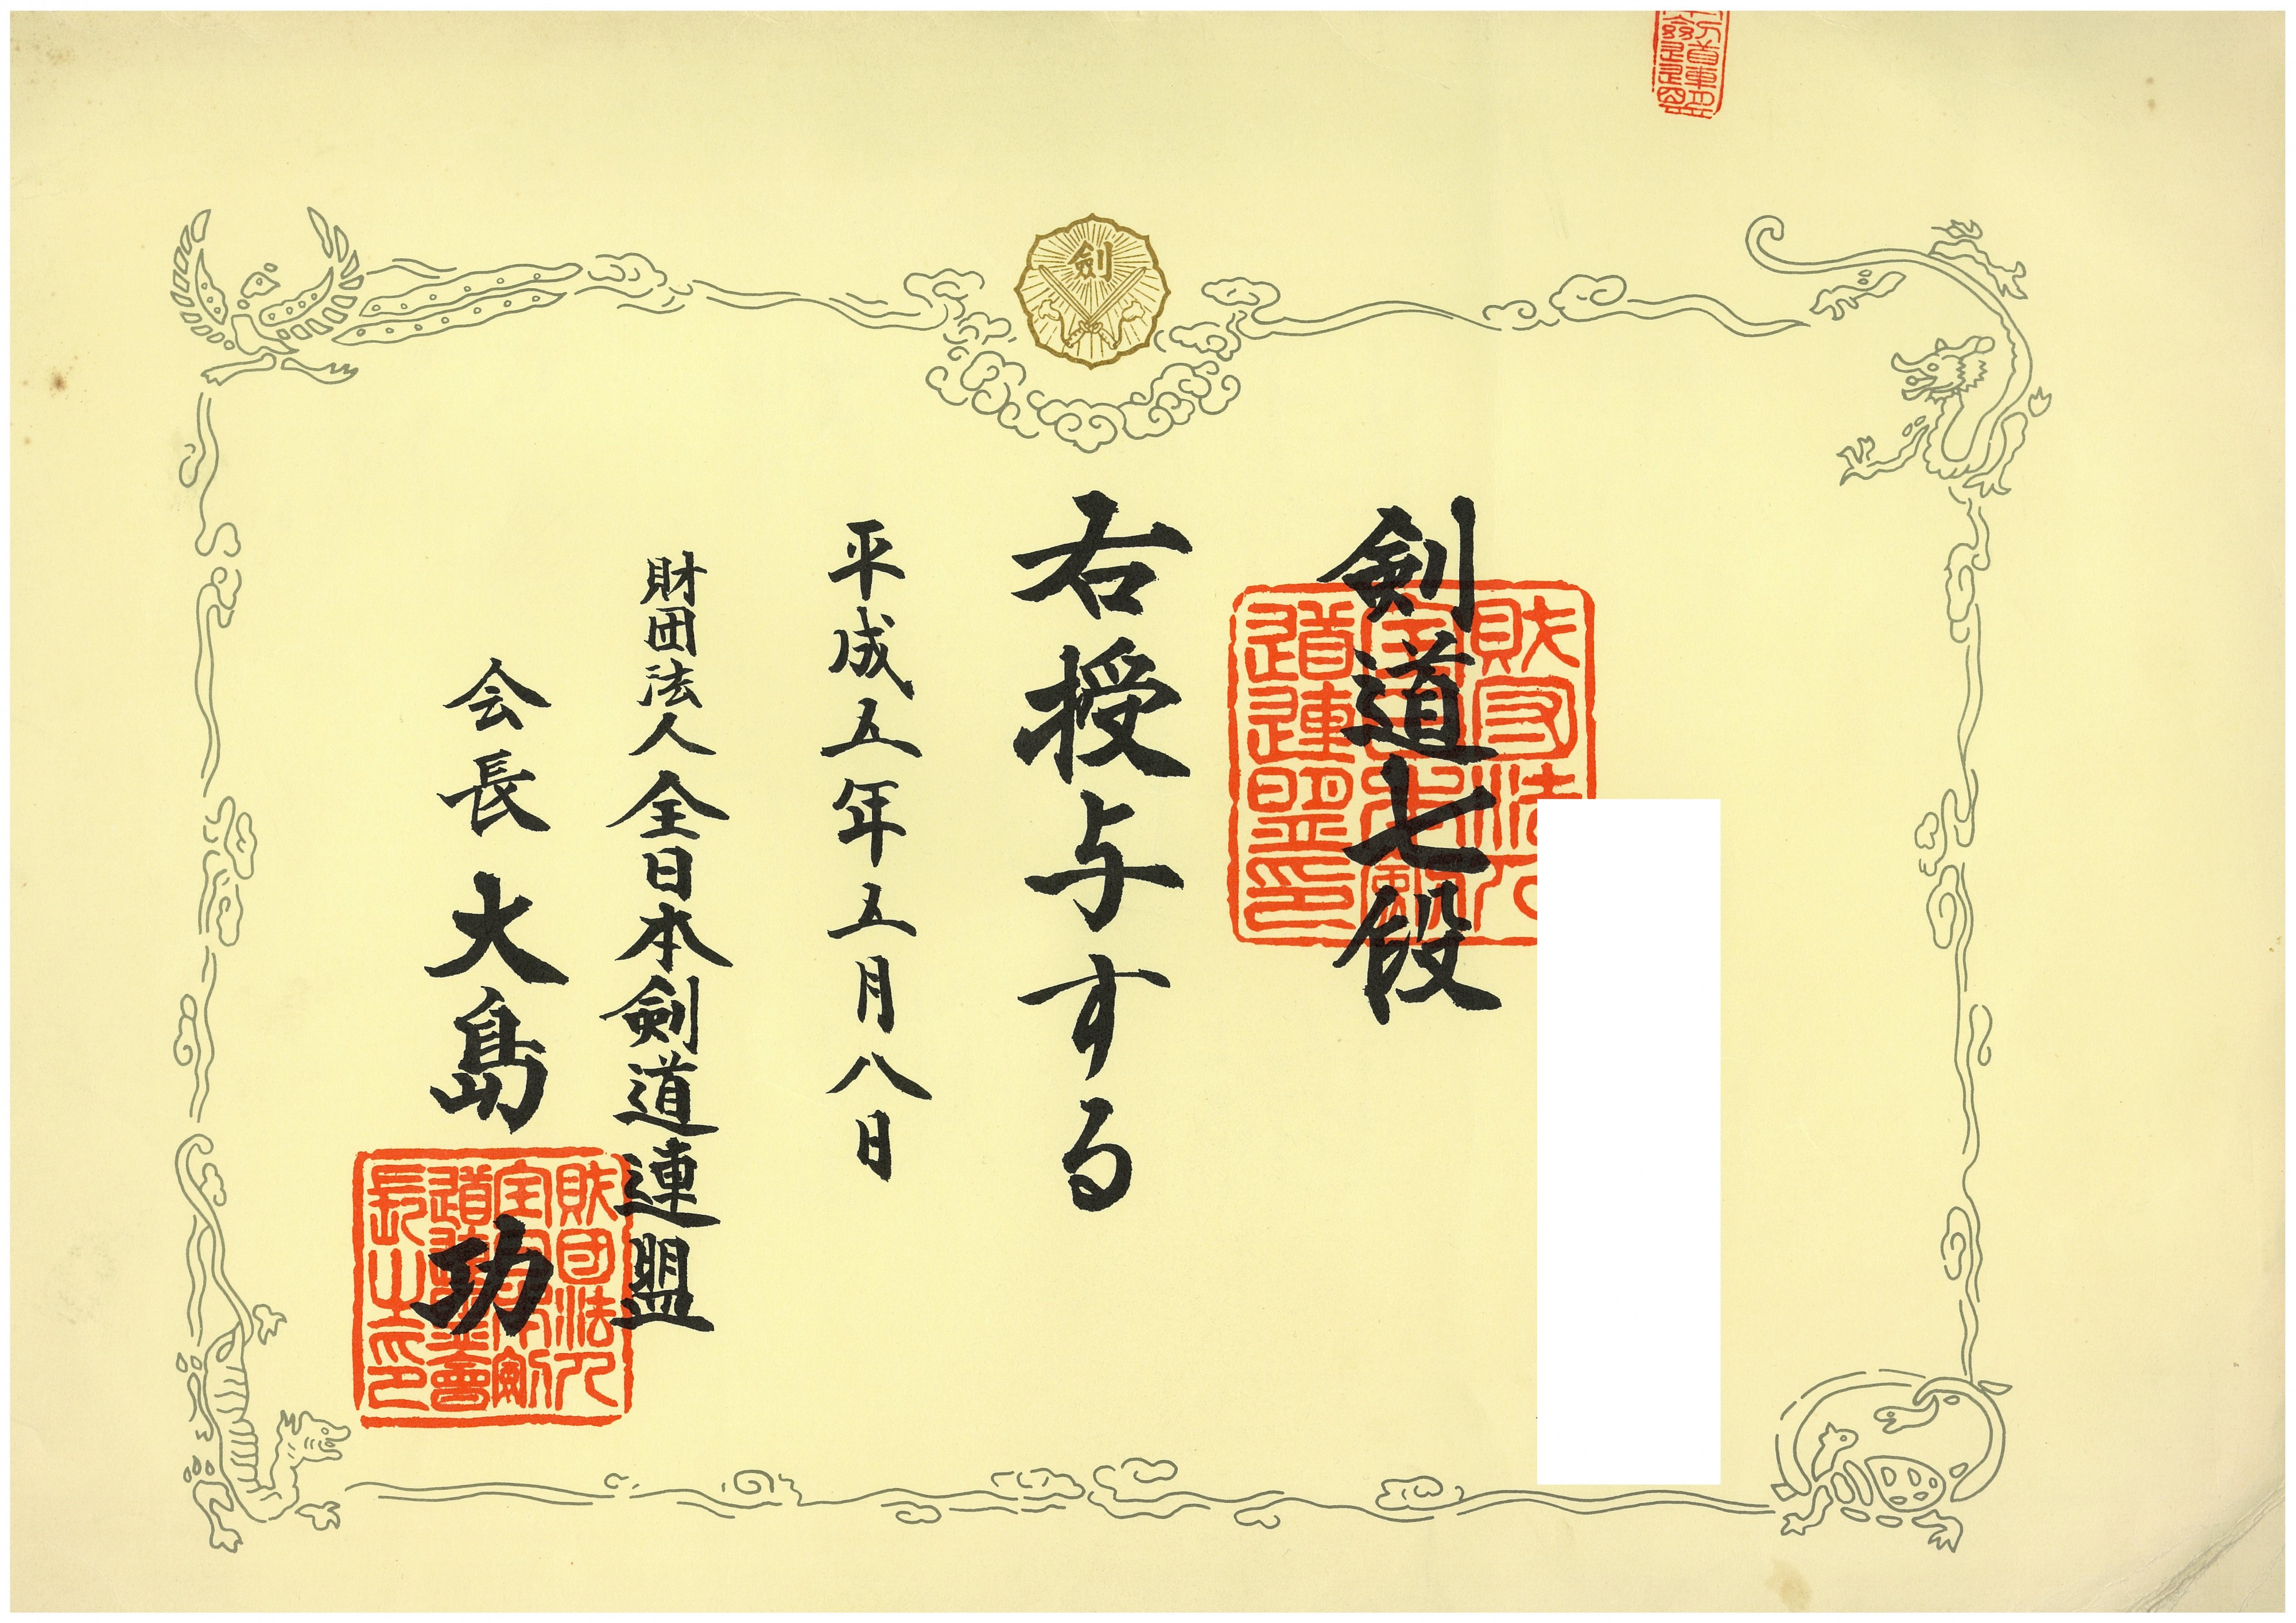 Diploma of 7th Dan in Japanese Kendo